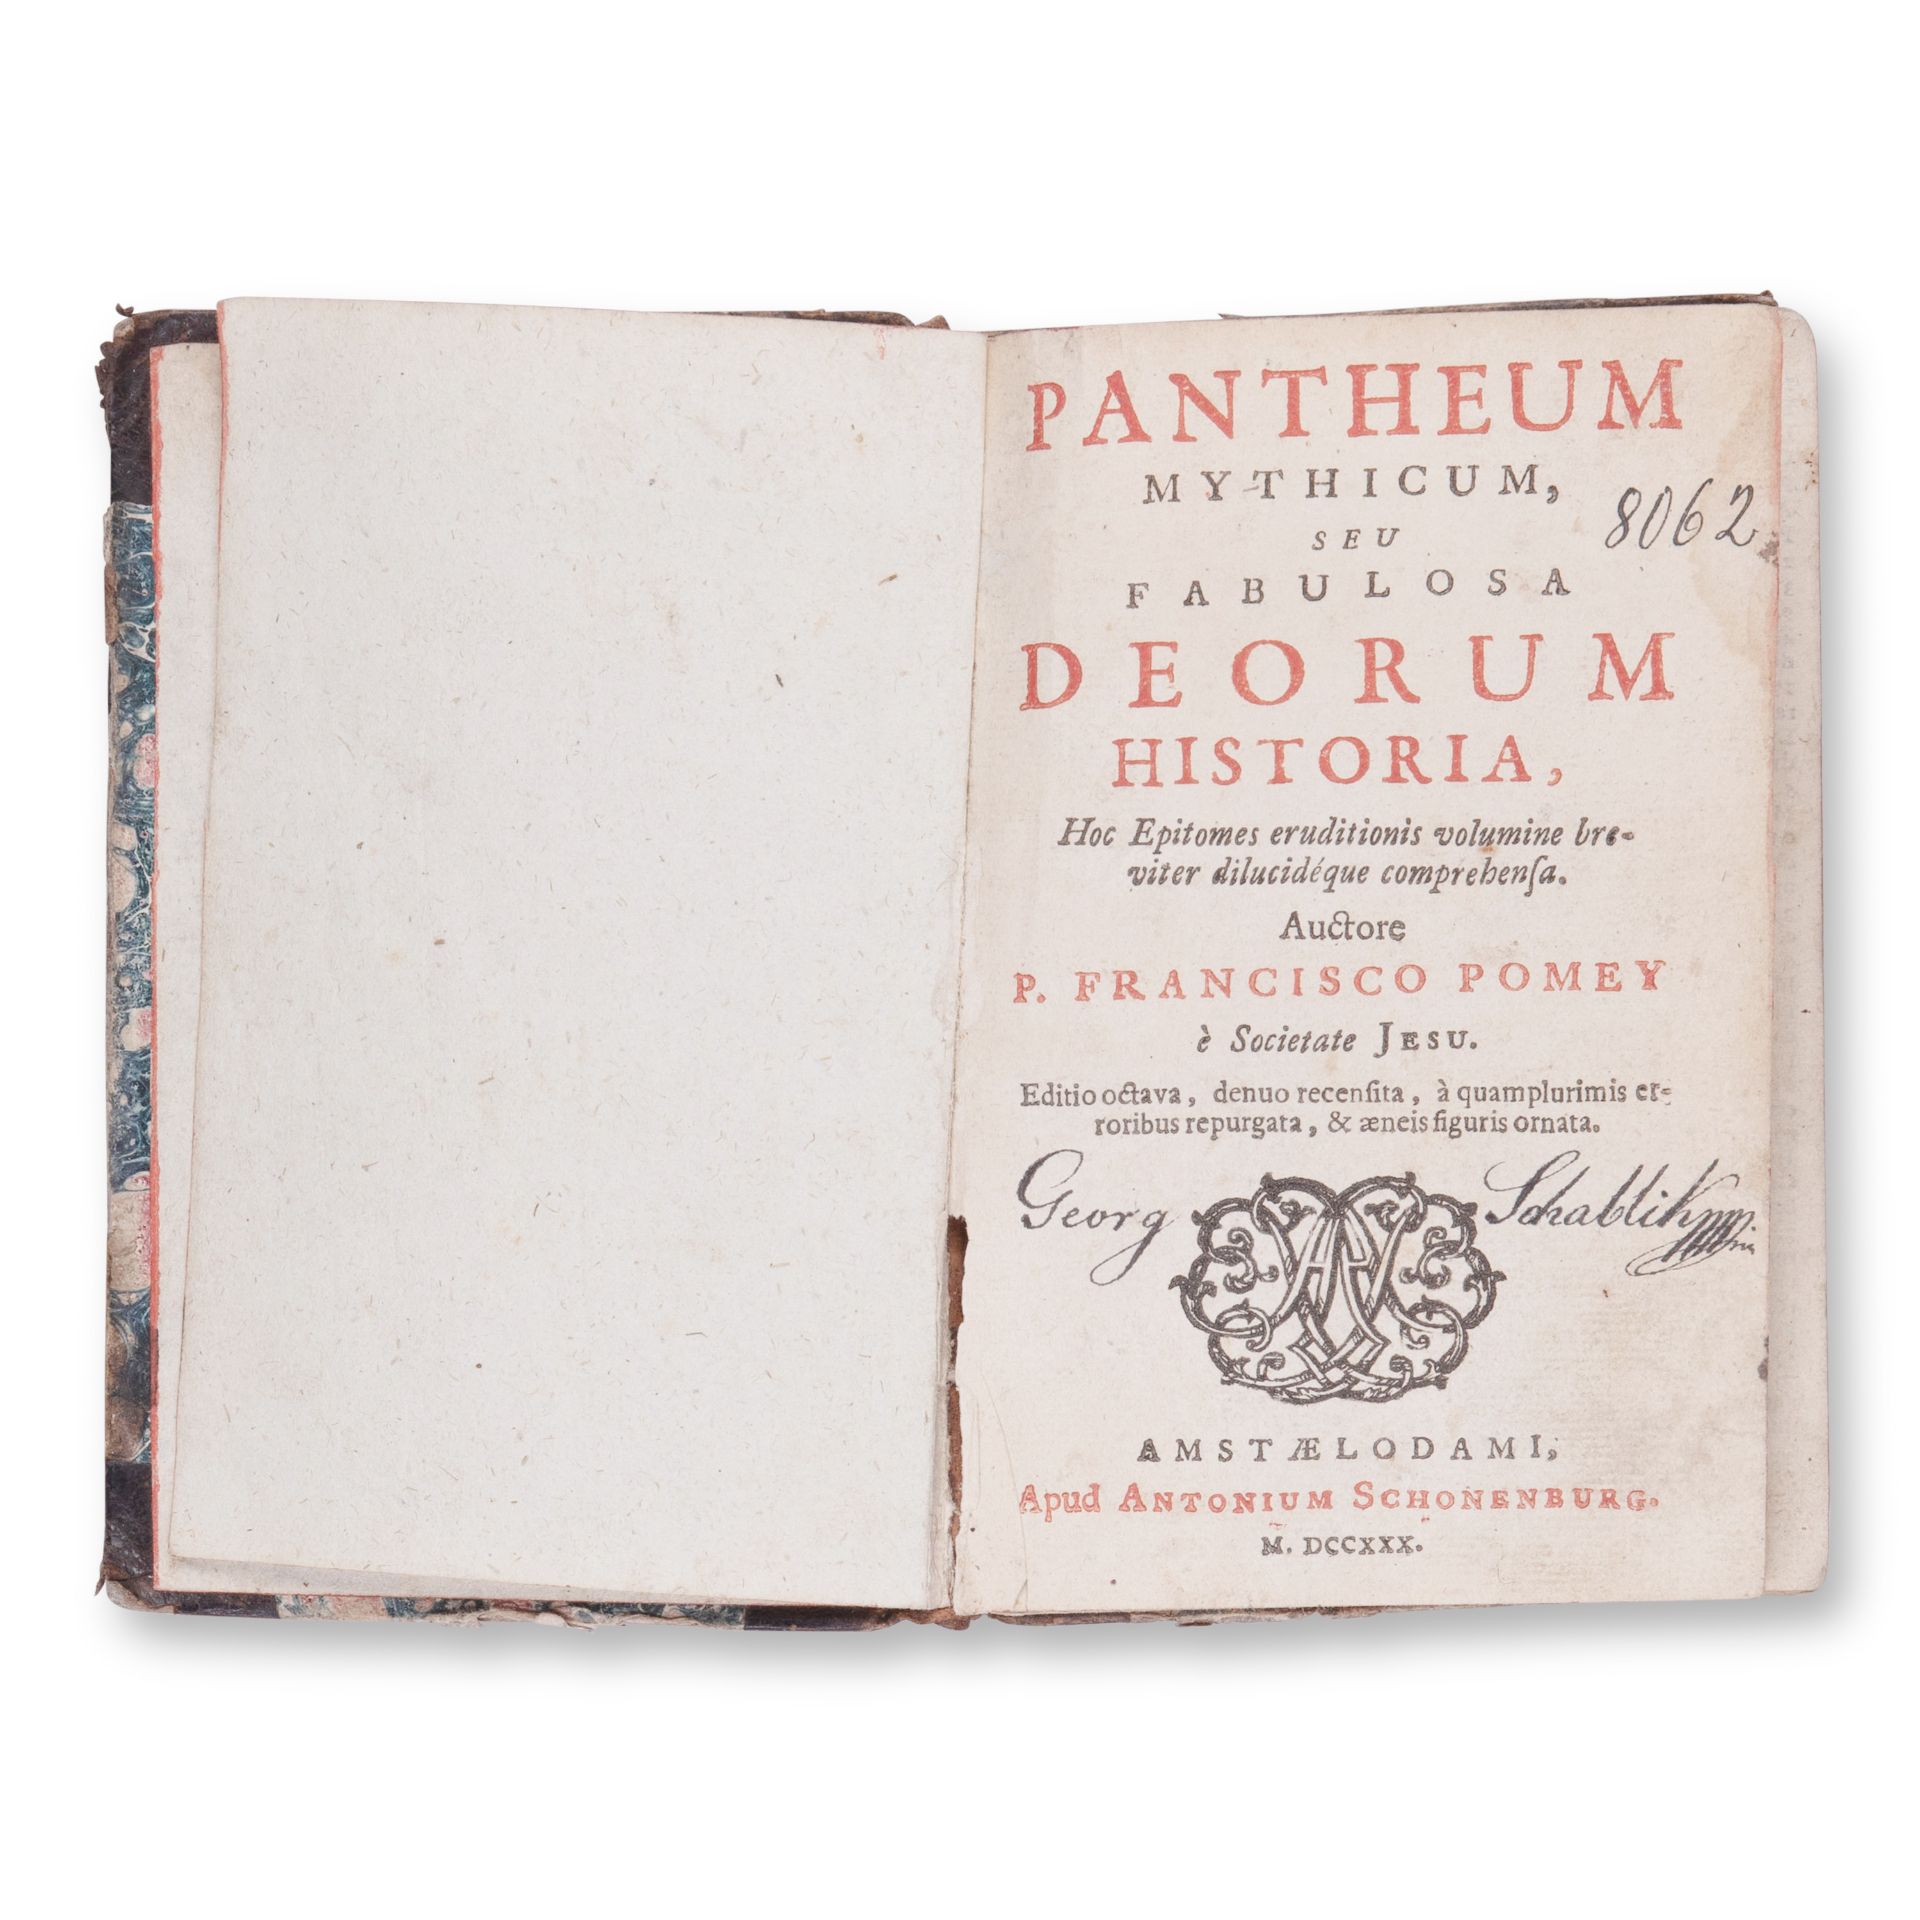 POMEY, P. Francisco (1618-1673): Pantheum Mythicum - Image 3 of 4